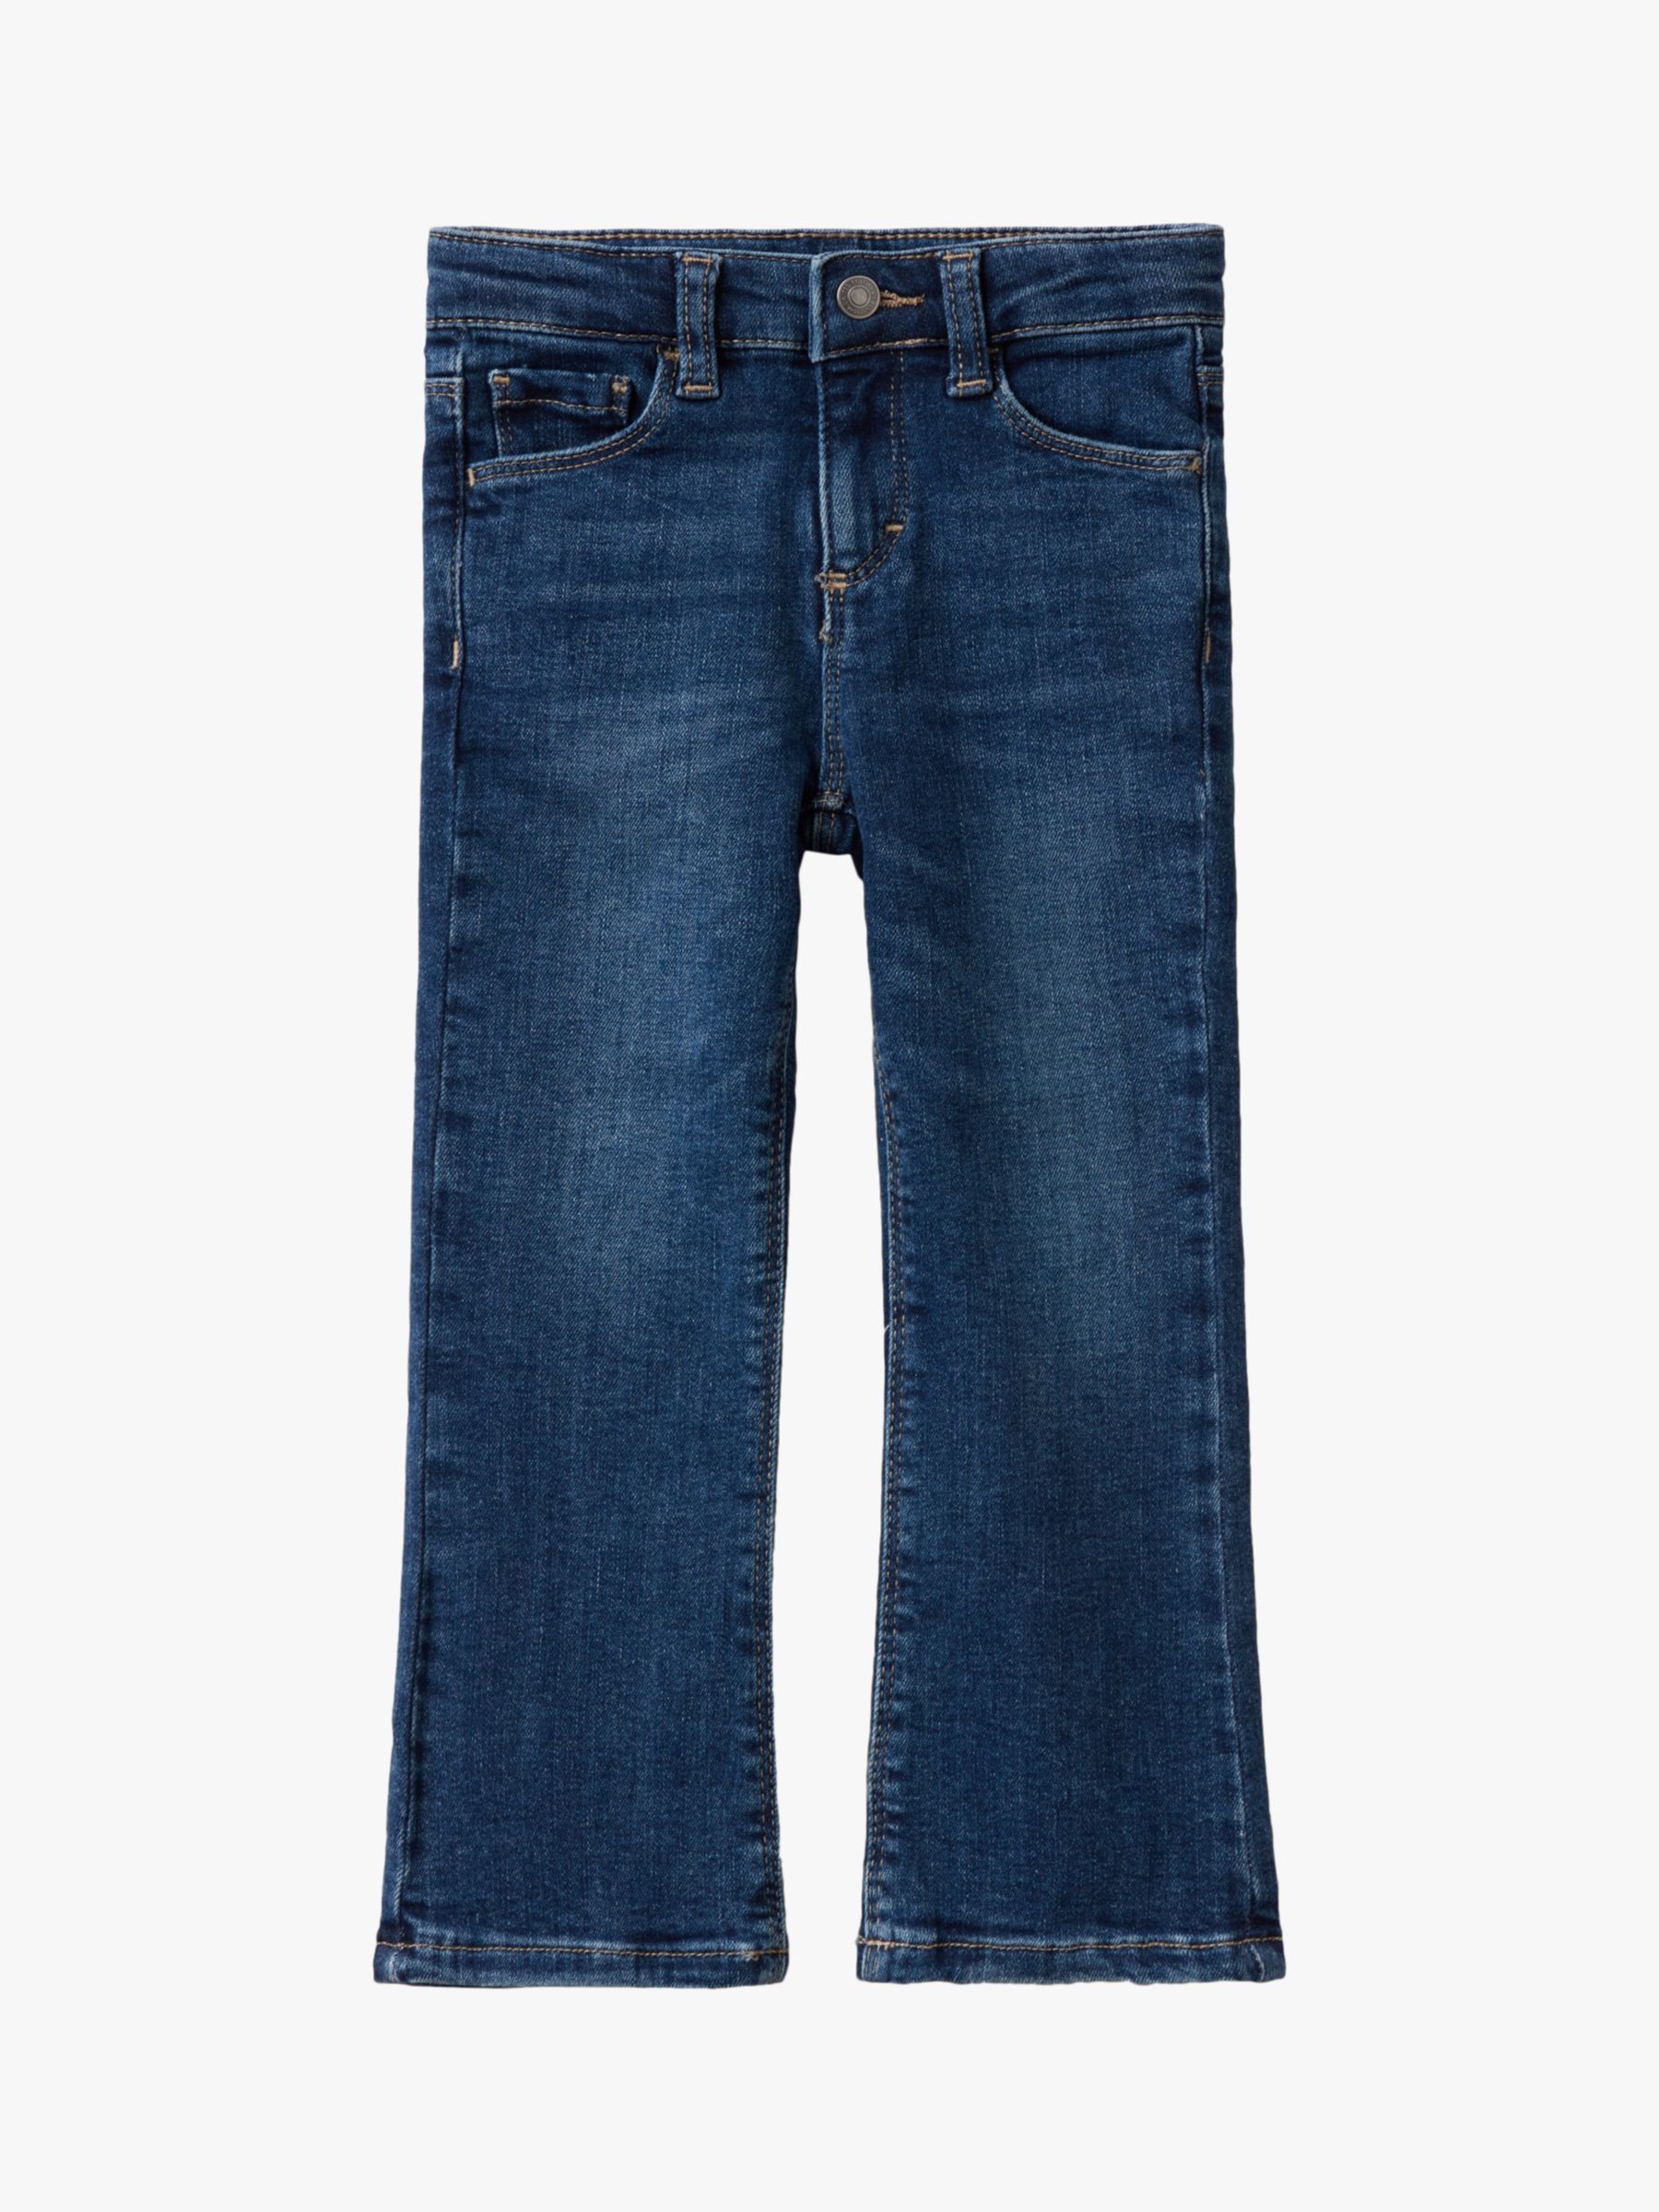 Buy Benetton Kids' Stretch 5 Pocket Jeans, Denim Blue Online at johnlewis.com